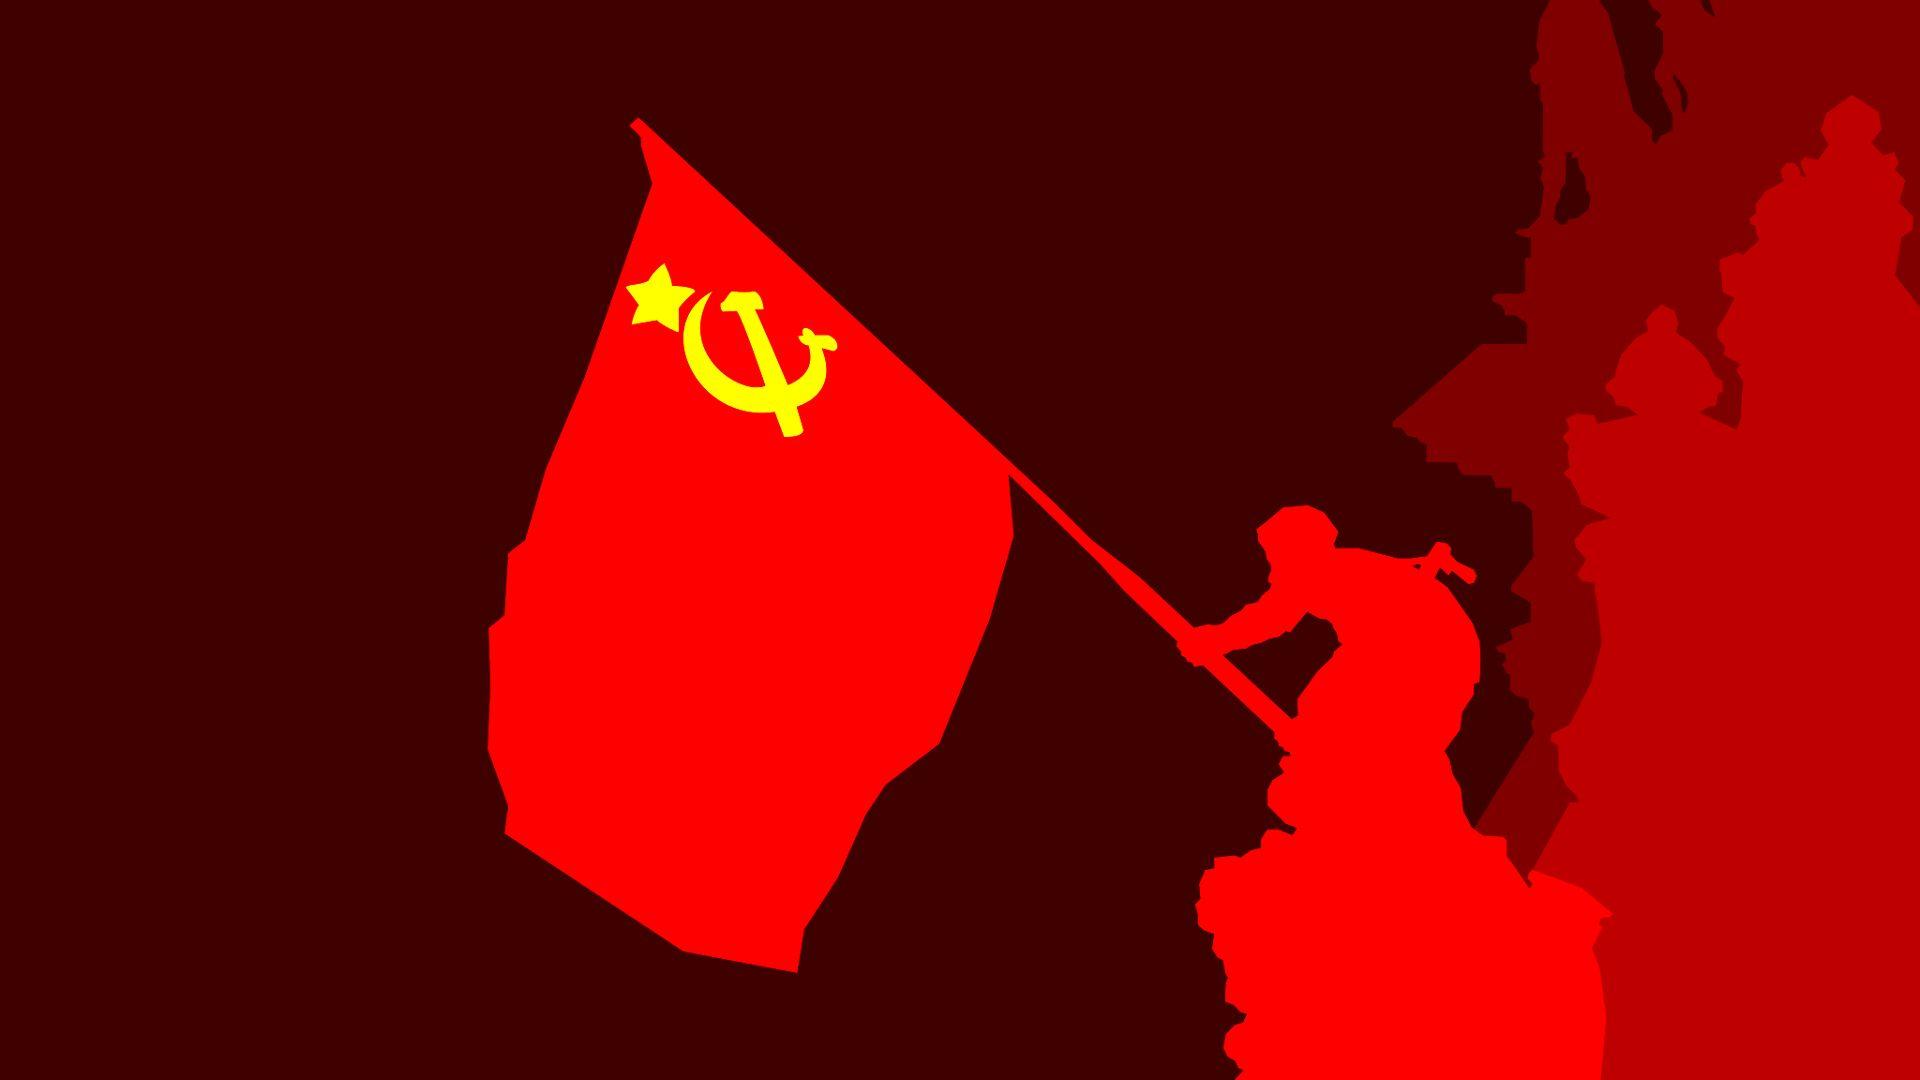 Marx Engels Lenin communism engels lenin marx socialism soviet HD  phone wallpaper  Peakpx